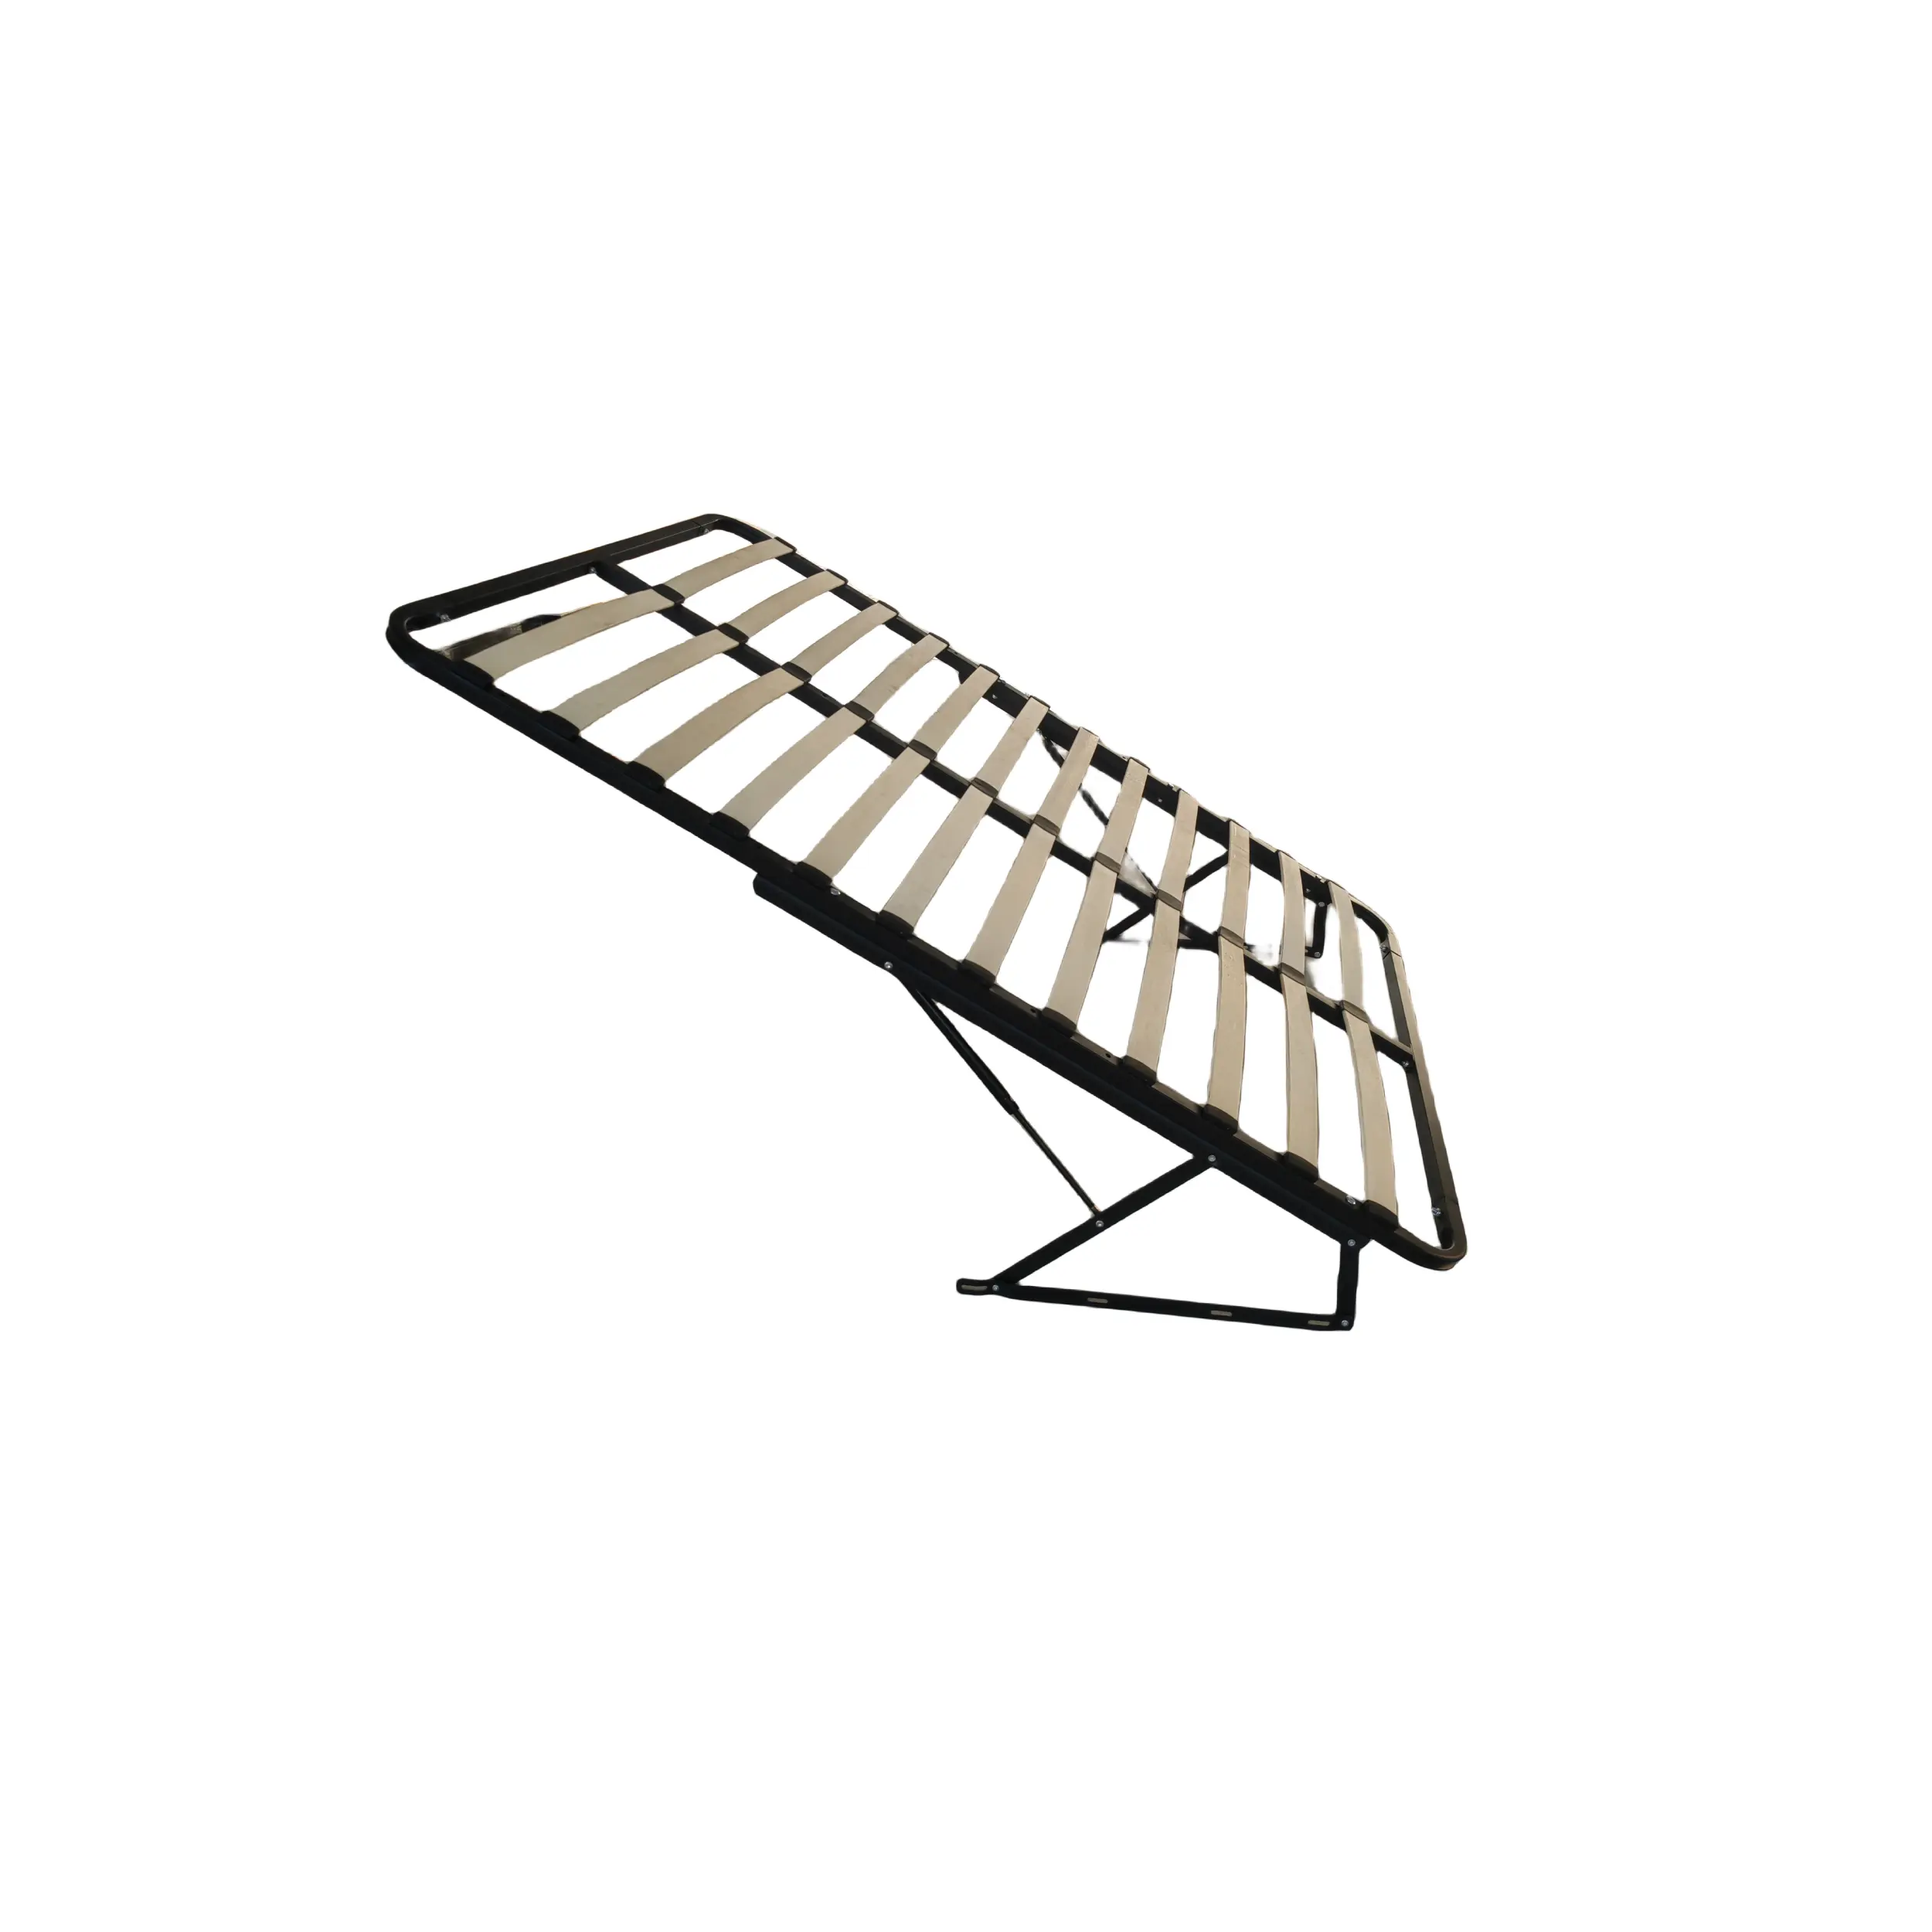 최신 디자인 퀸 사이즈 노크 다운 패킹 고품질 강철 나무 침대 프레임